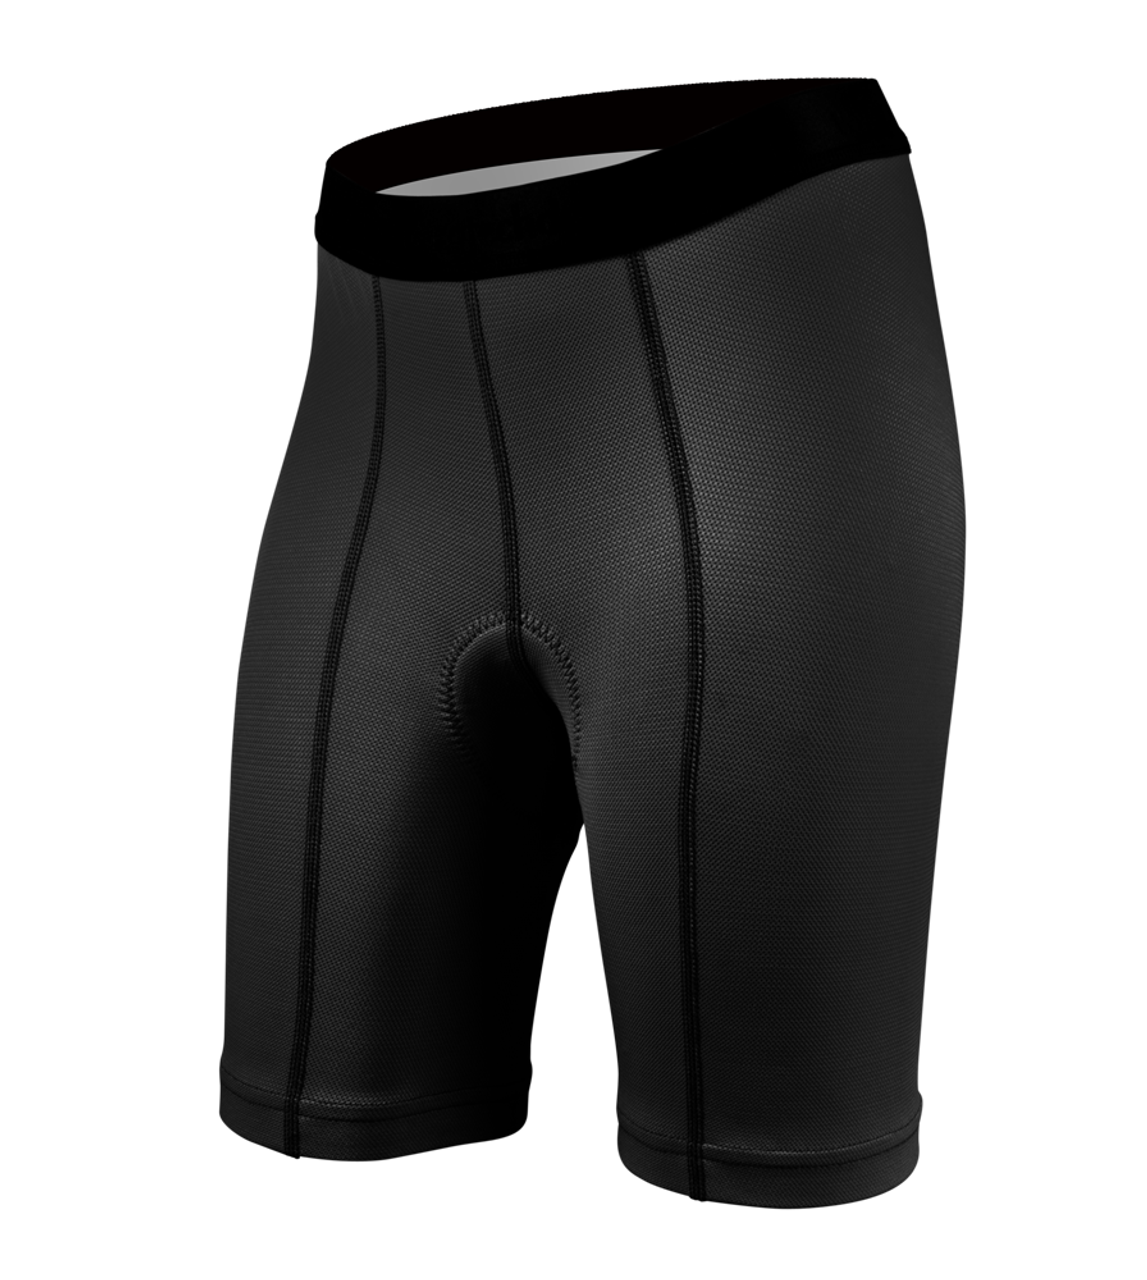 RiToEasysports Women Cycling Underwear,3D Padded Women Bicycle Briefs Bike  Shorts Underwear for Women